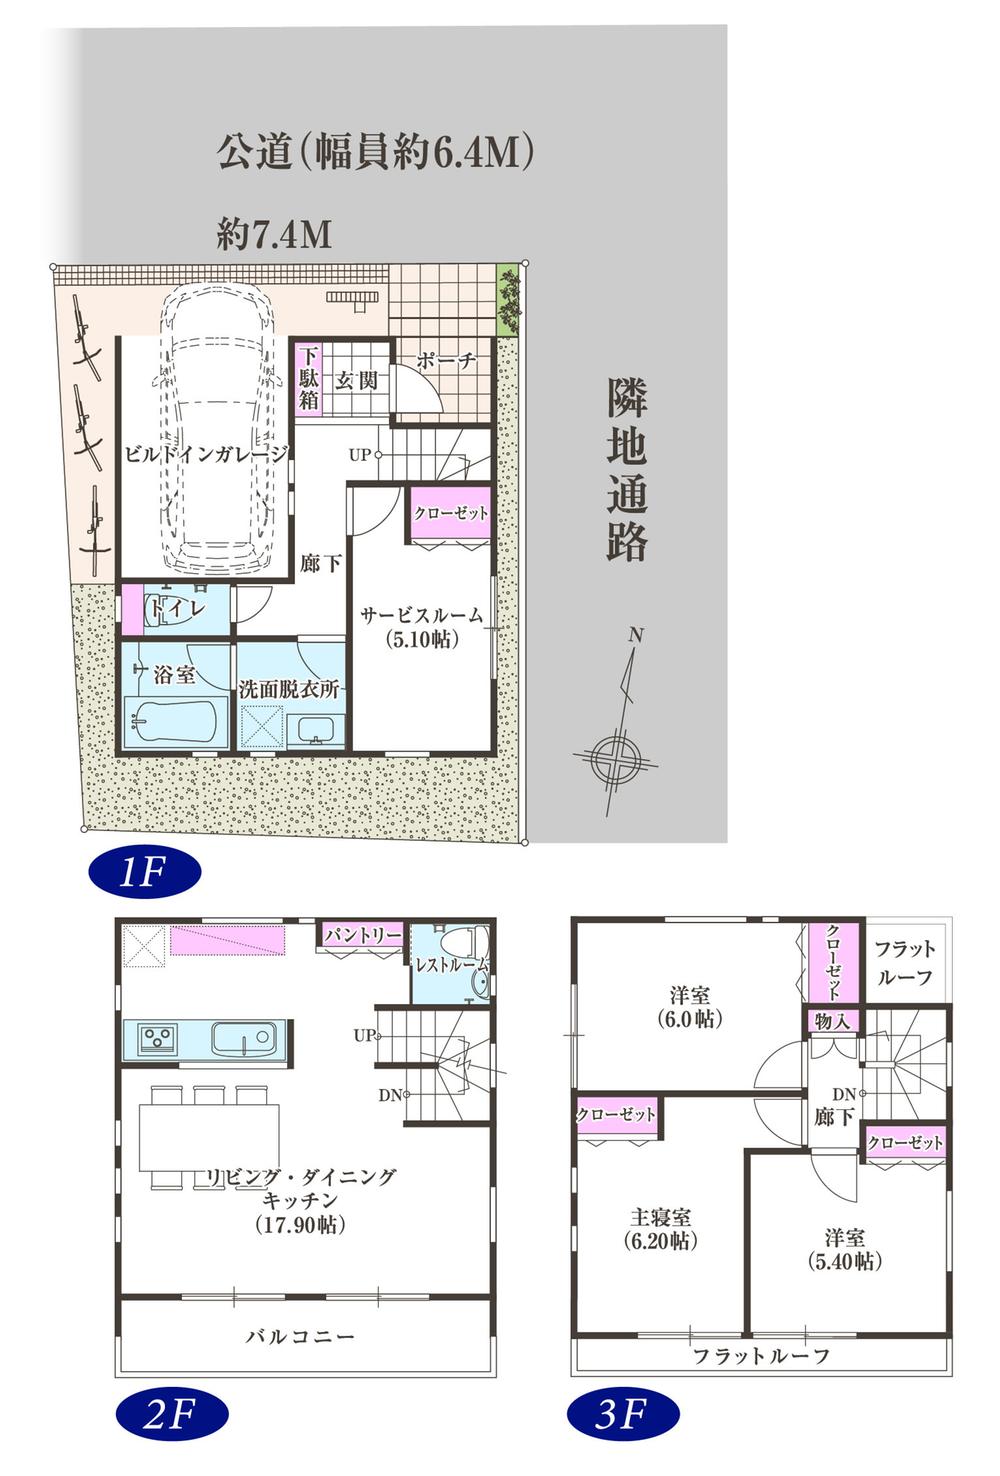 Floor plan. 38,800,000 yen, 4LDK, Land area 64.84 sq m , Building area 108.23 sq m floor plan